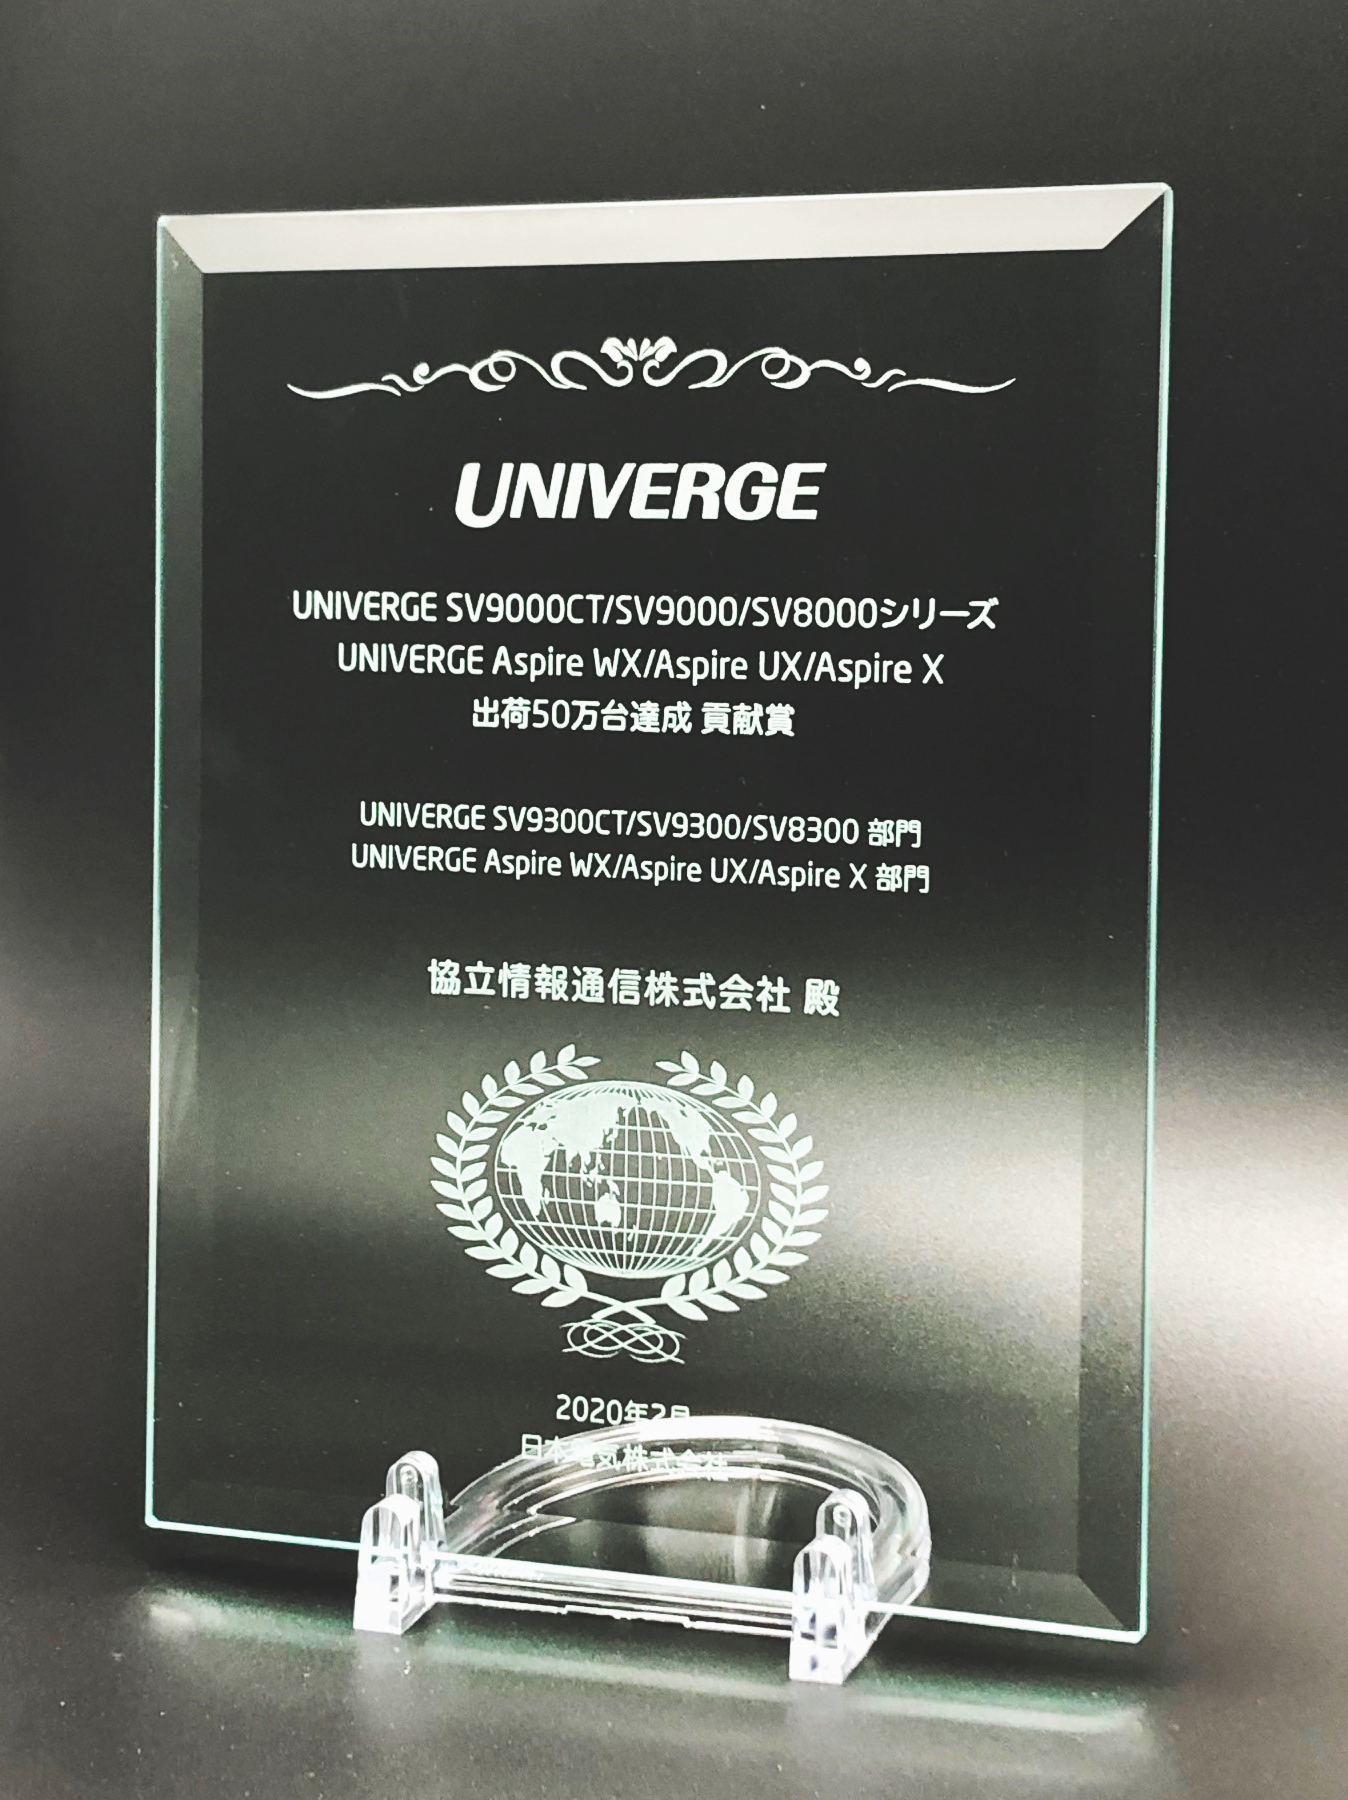 「UNIVERGE SVシリーズ/Aspireシリーズ出荷50万台達成 貢献賞」